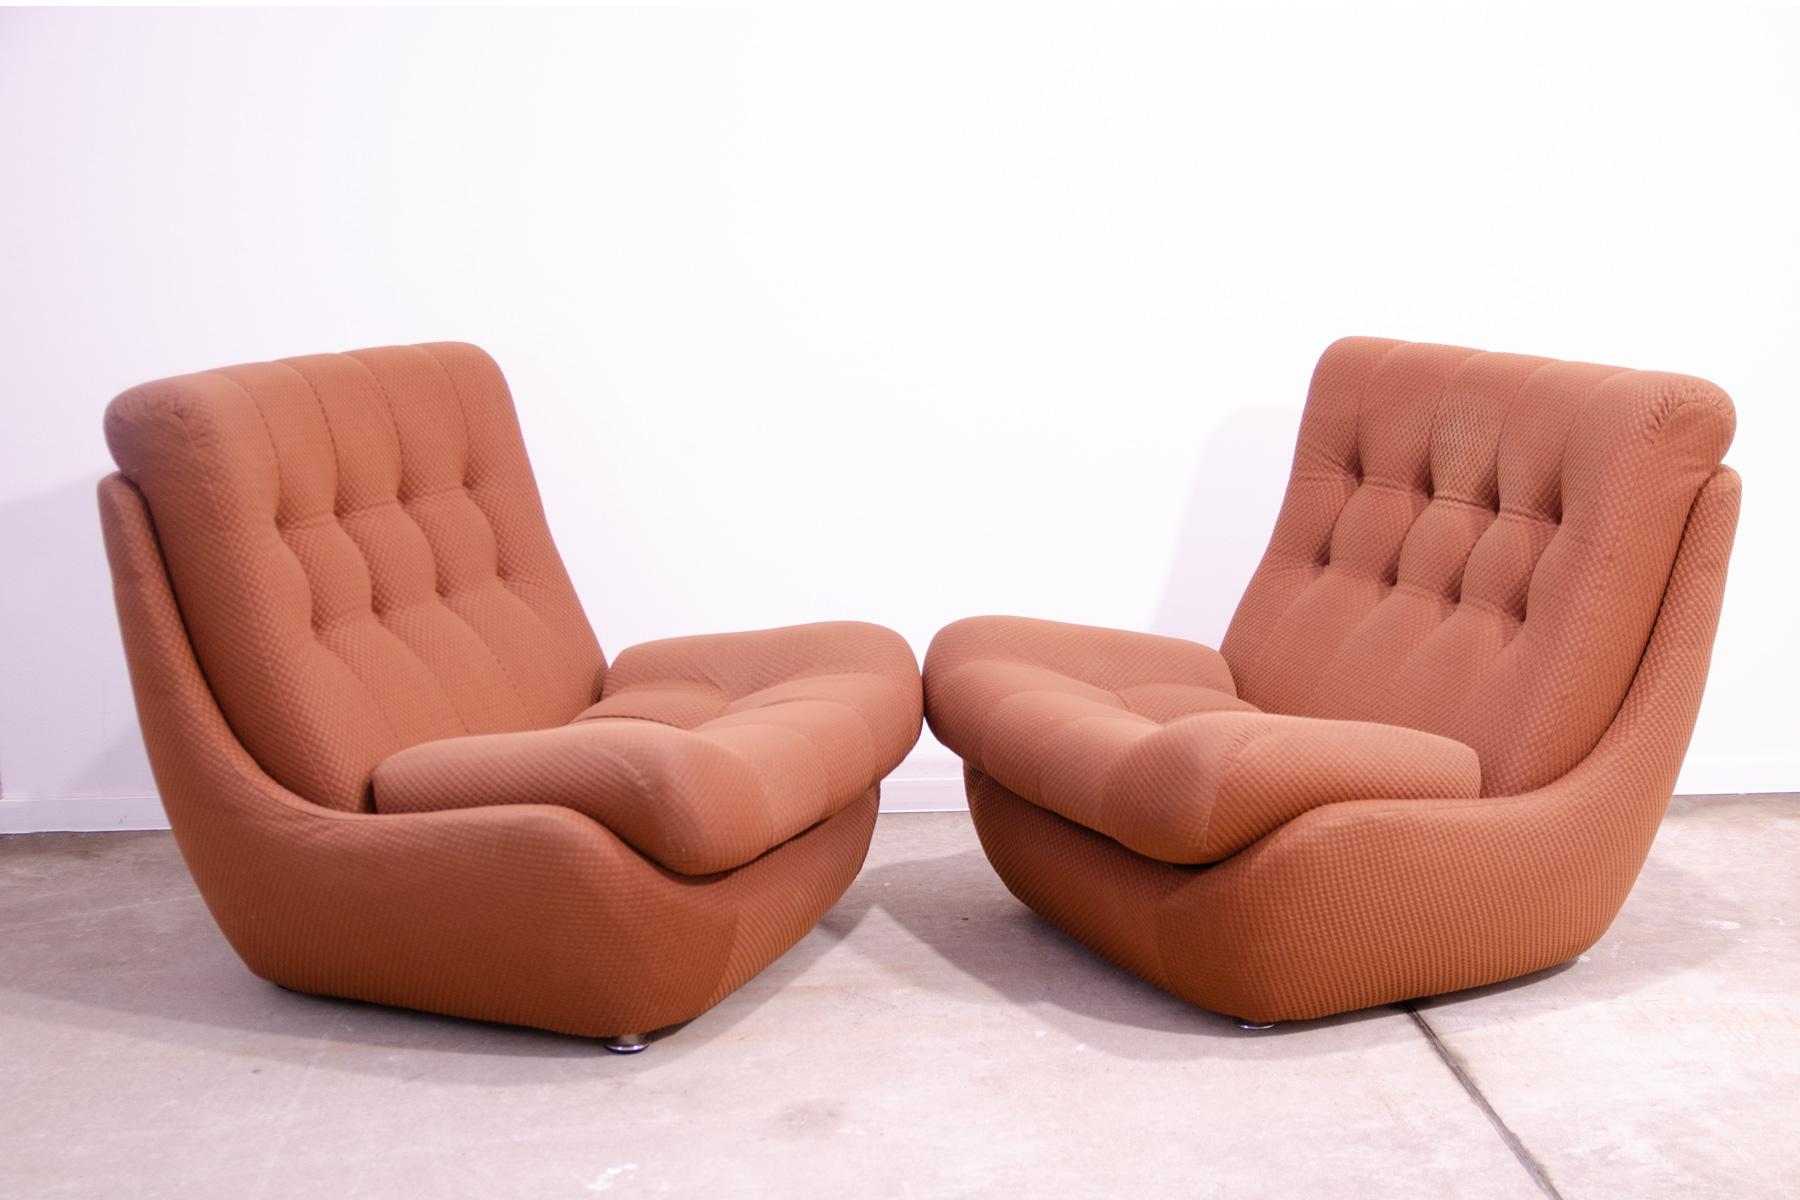 Ces fauteuils vintage faisaient partie d'un ensemble de salon fabriqué par la société Jitona dans les années 1970.
Ils représentent un exemple typique du design de meubles des années 1970/1980 du XXe siècle dans l'ancienne Tchécoslovaquie.
Le